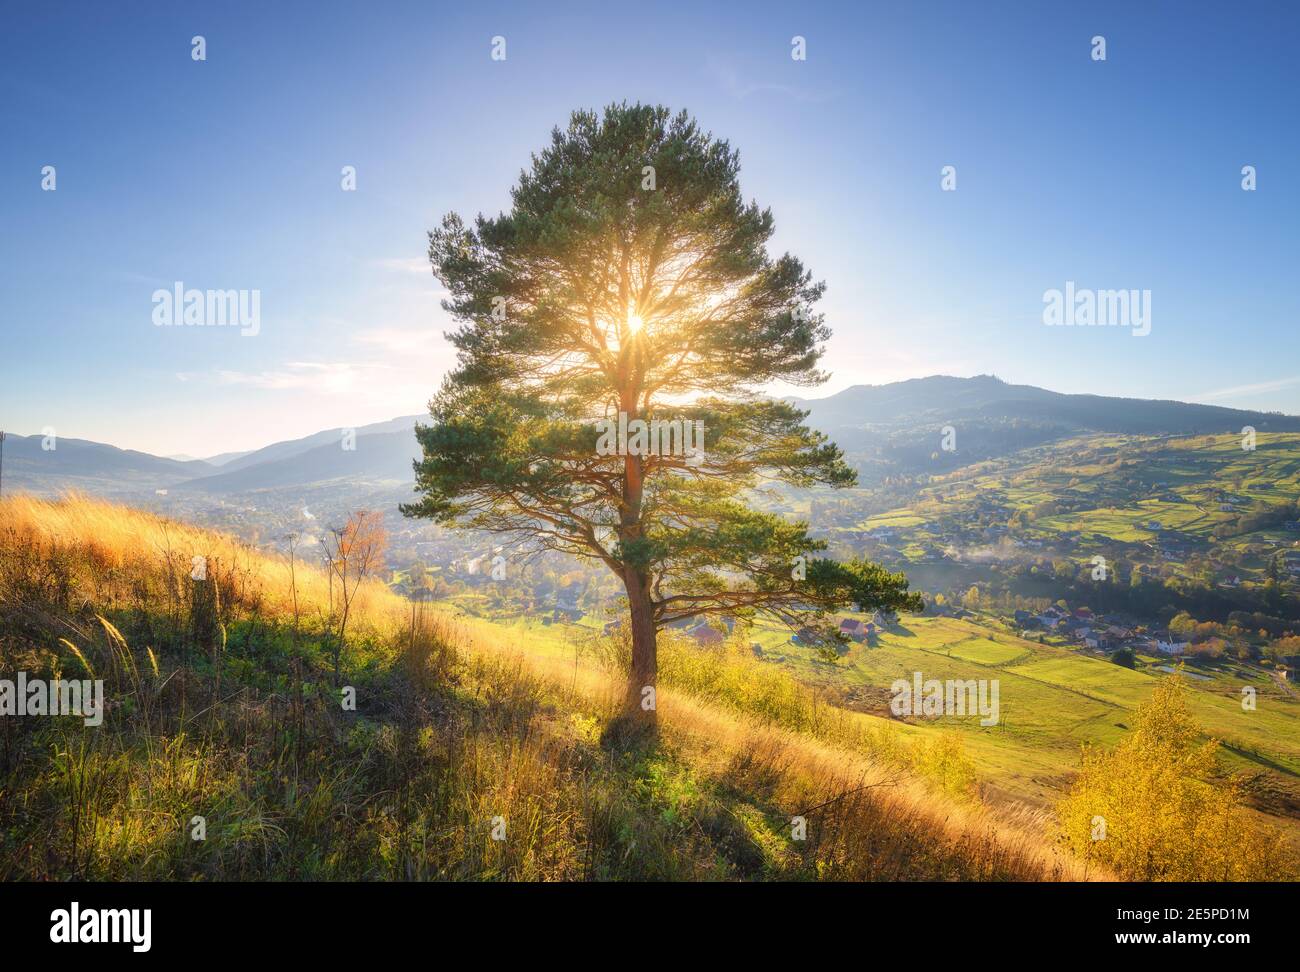 Magnifique arbre seul sur la colline en montagne au coucher du soleil en automne Banque D'Images